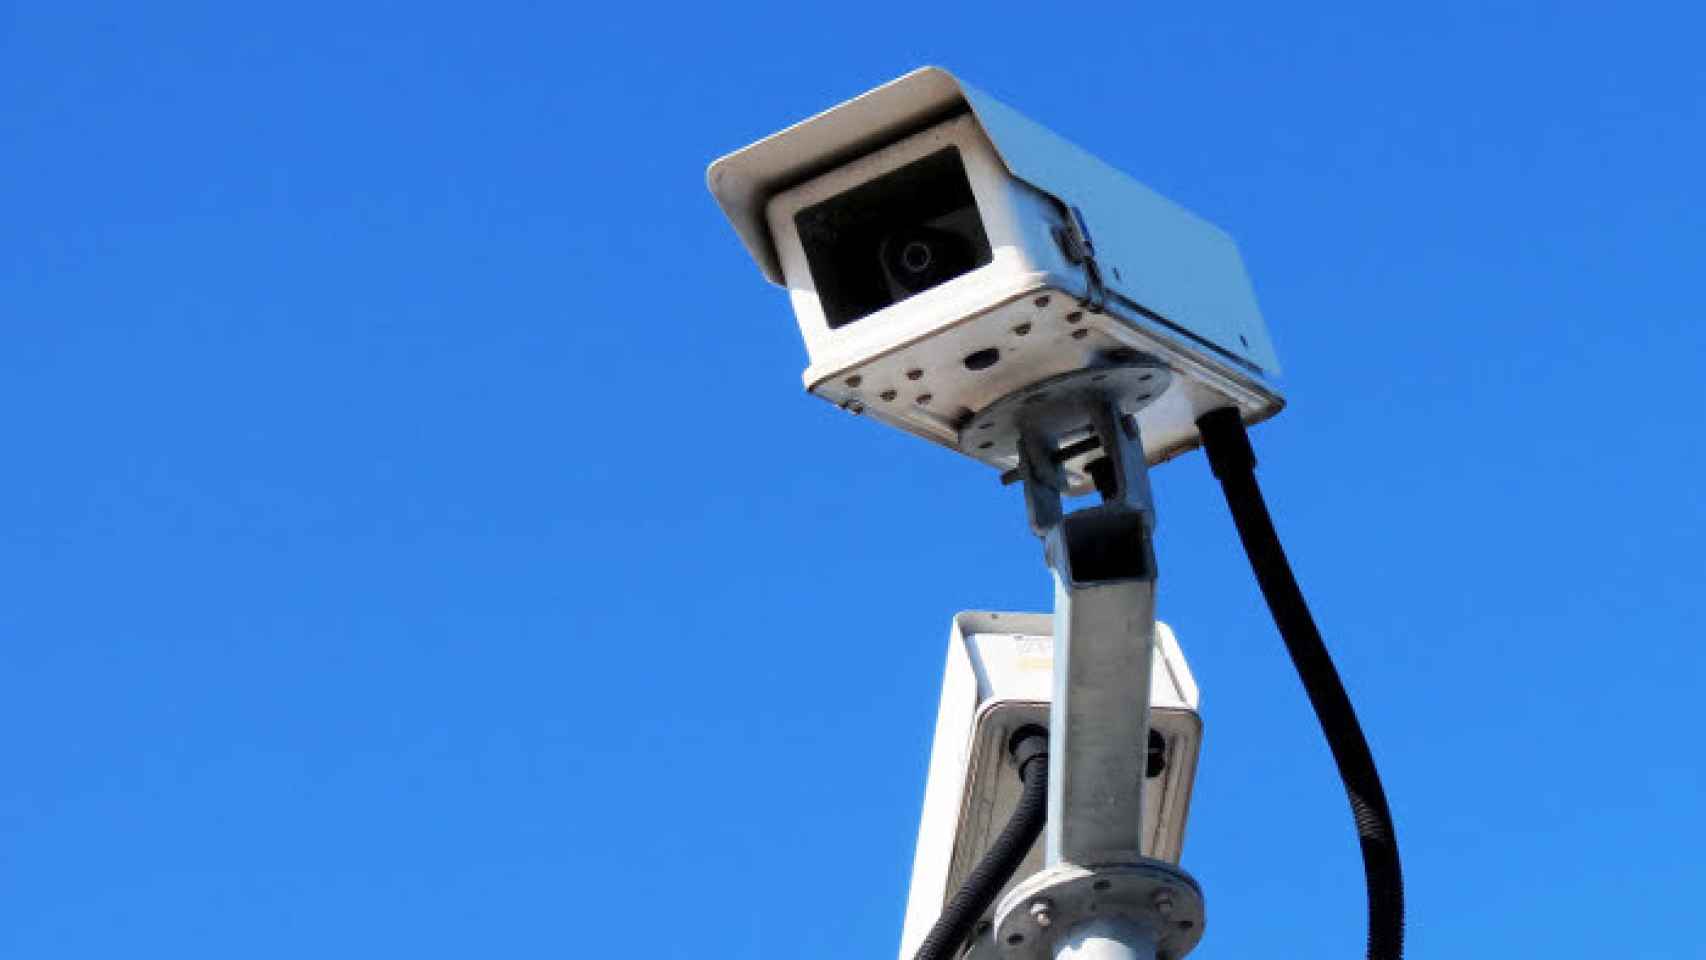 España:Cámaras de vigilancia en los coches ¿intimidad o seguridad?